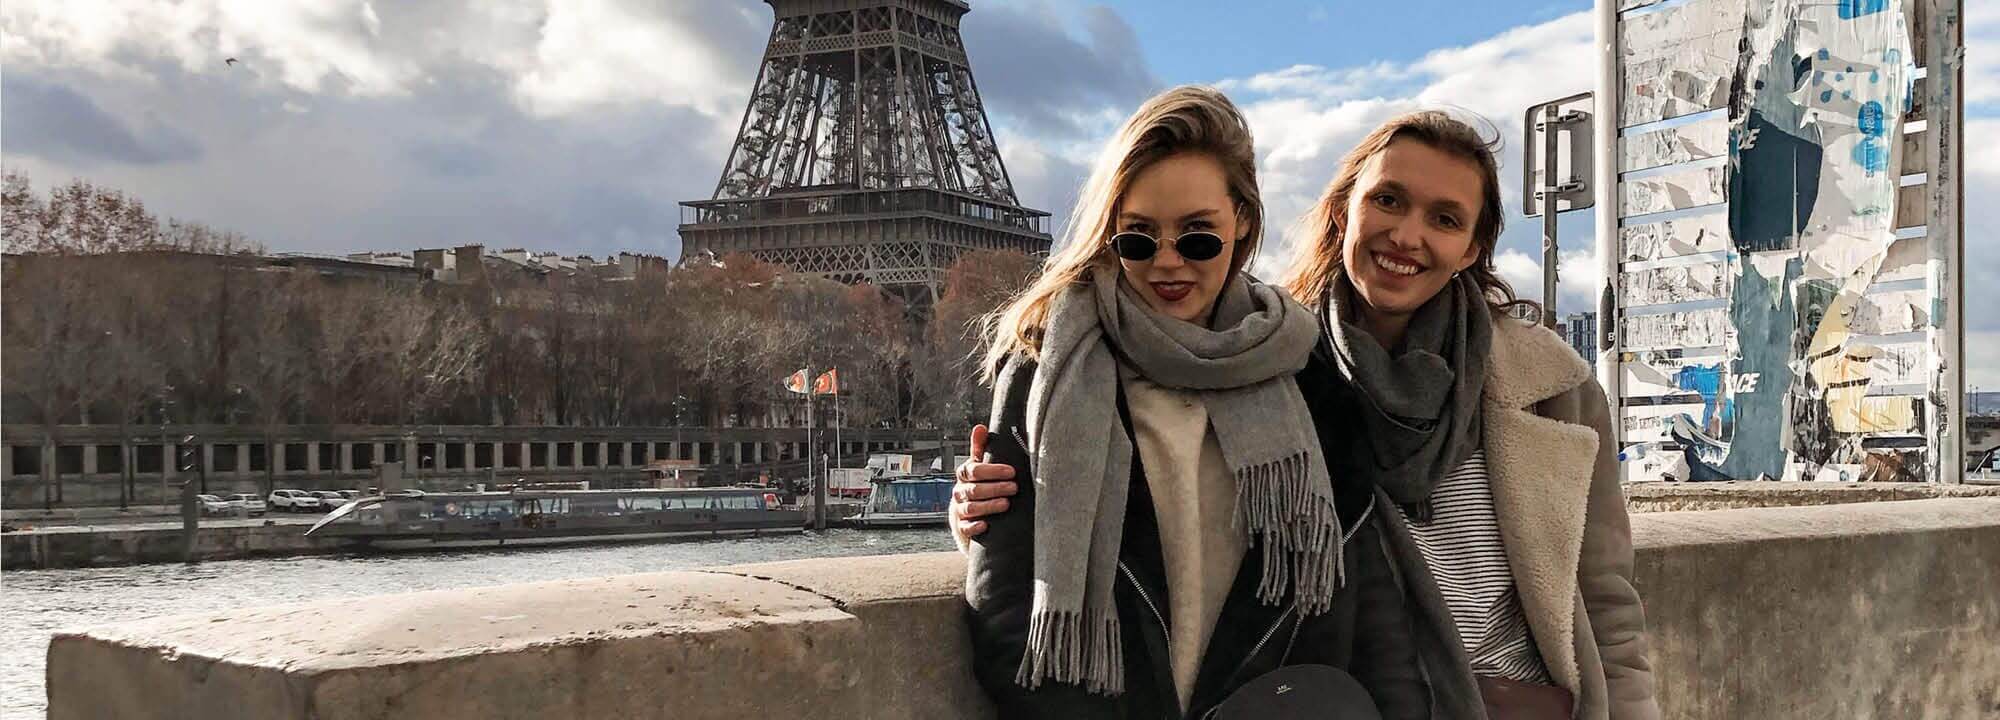 Erfahrungsbericht zum Erasmus+ Auslandssemester in Paris: Studieren an der EDC Paris Business School